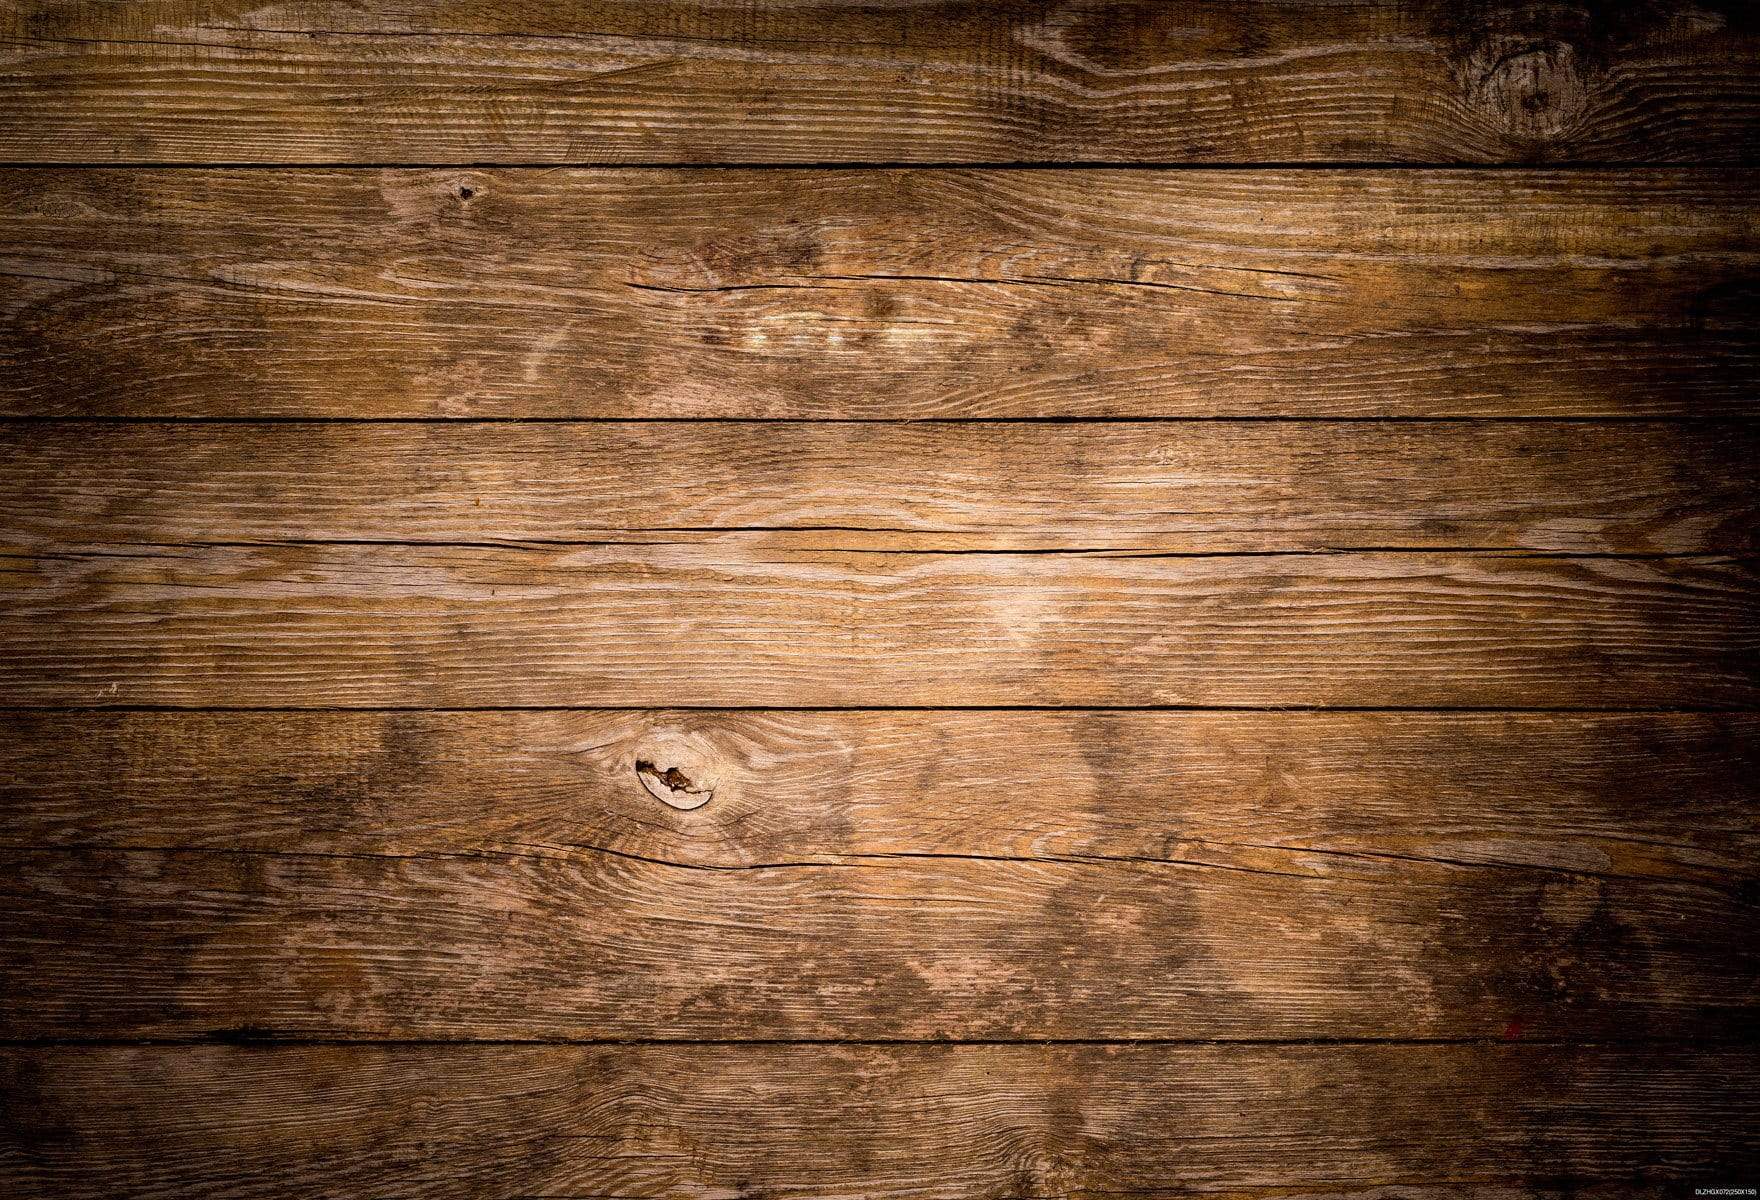 Katebackdrop¡êoKate Dark Brown Wood Floor Computer Printed Rubber Floor Mat